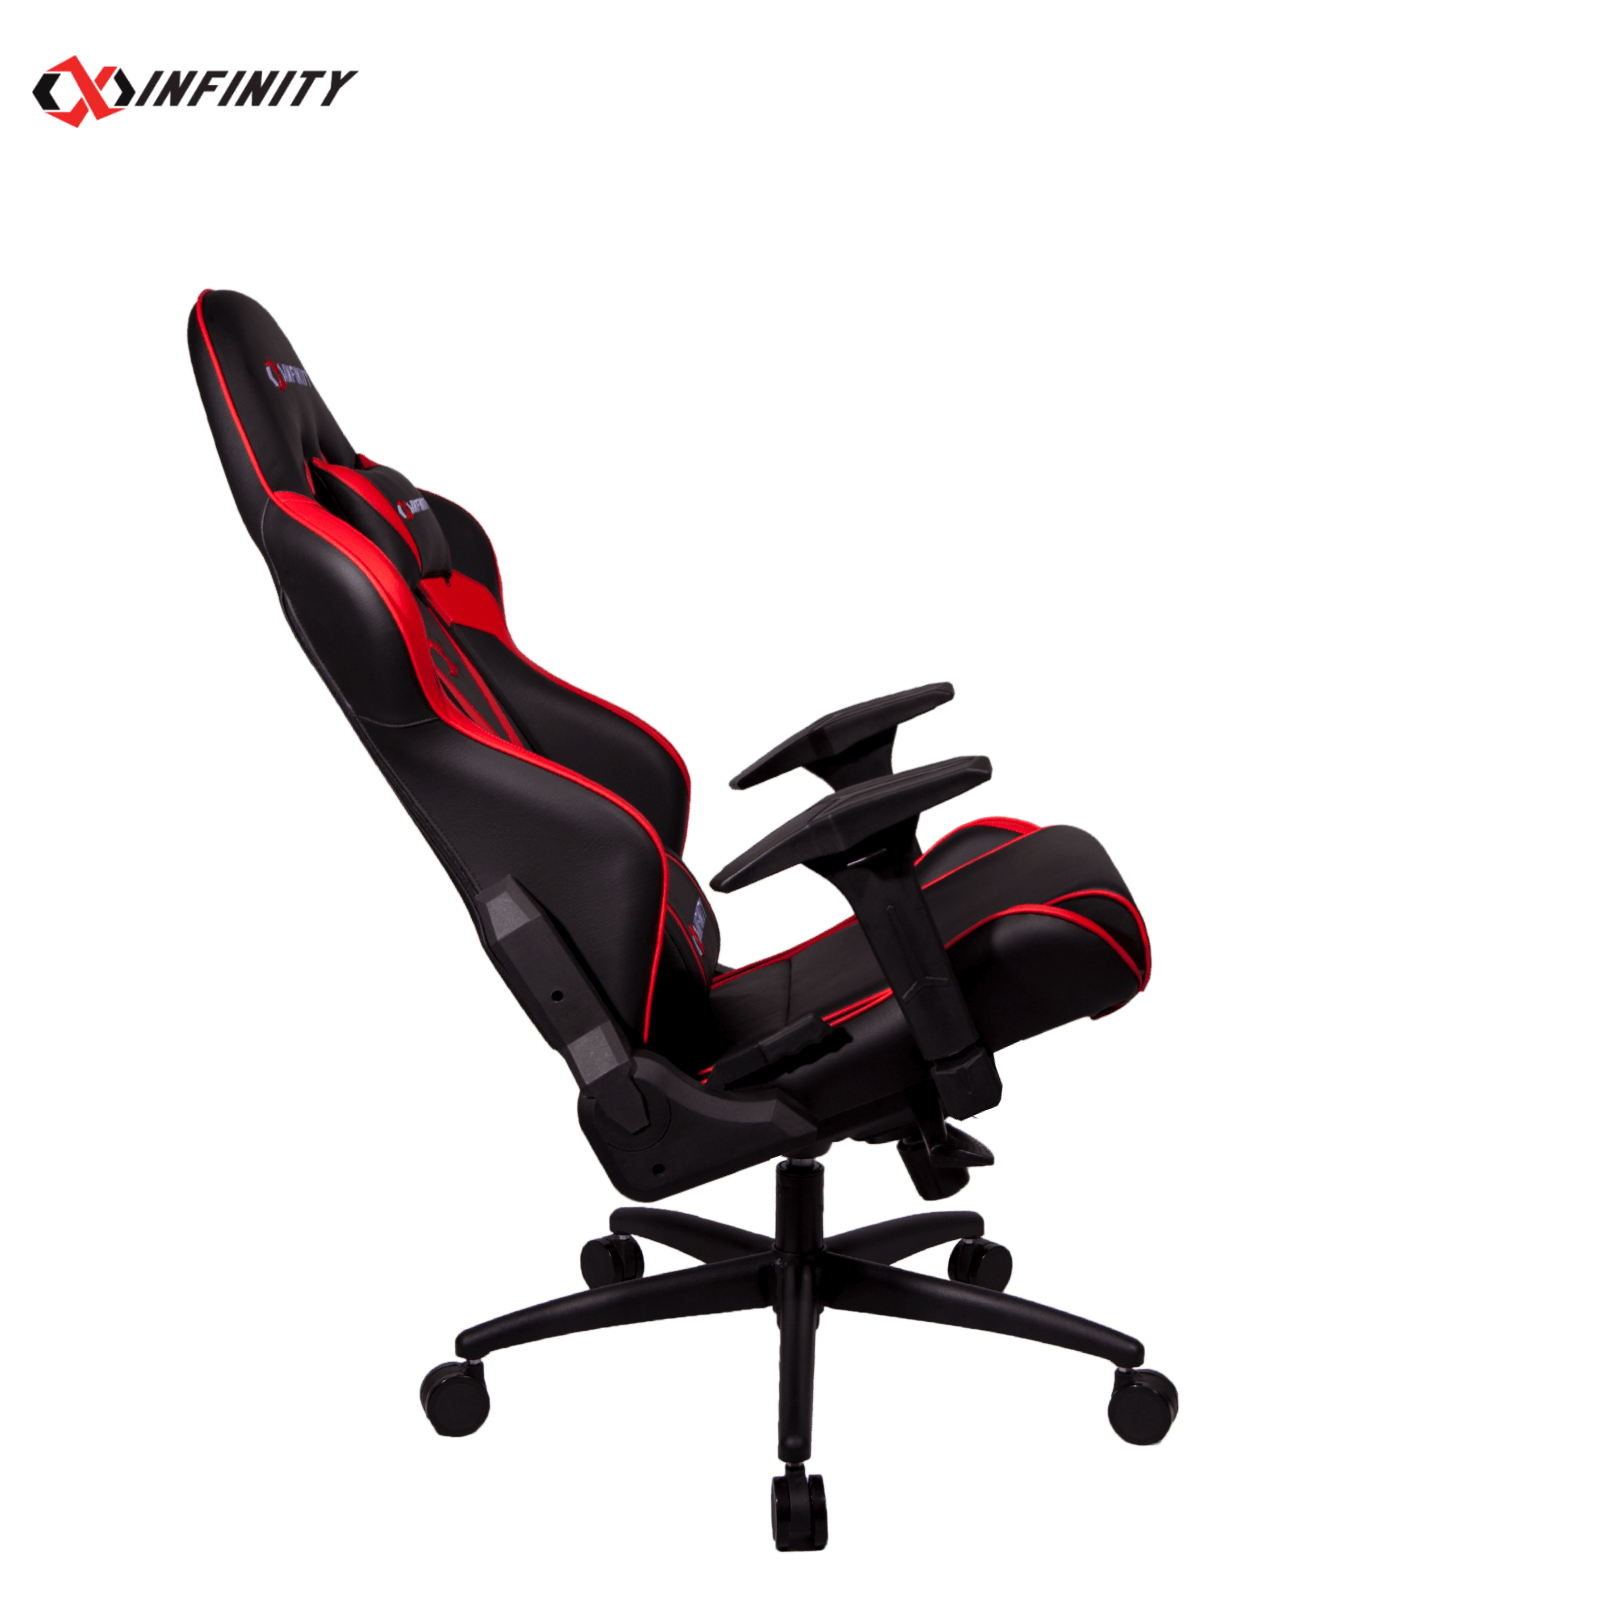 صندلی گیمینگ Xinfinity - سری Z - قرمز